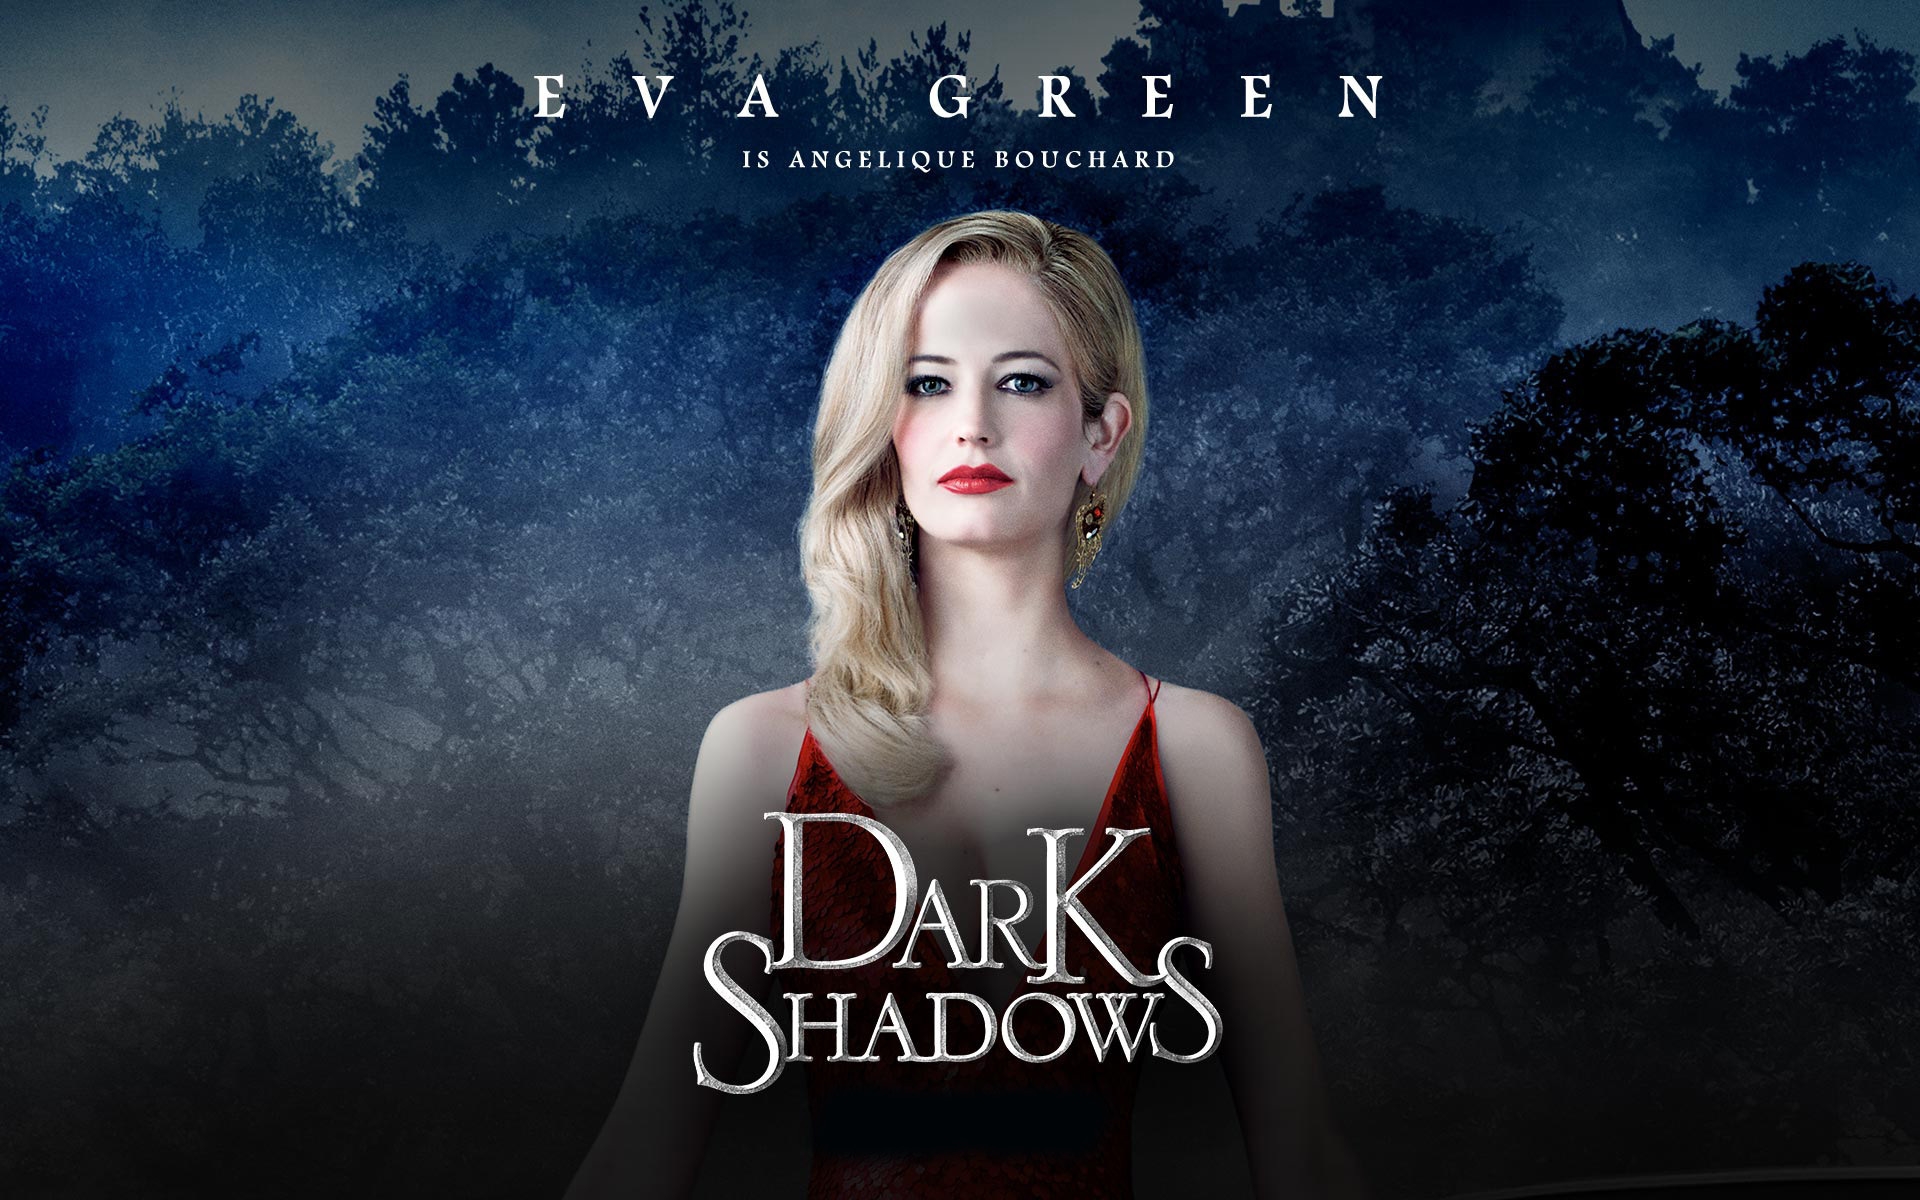 Dark Shadows Eva Green for 1920 x 1200 widescreen resolution